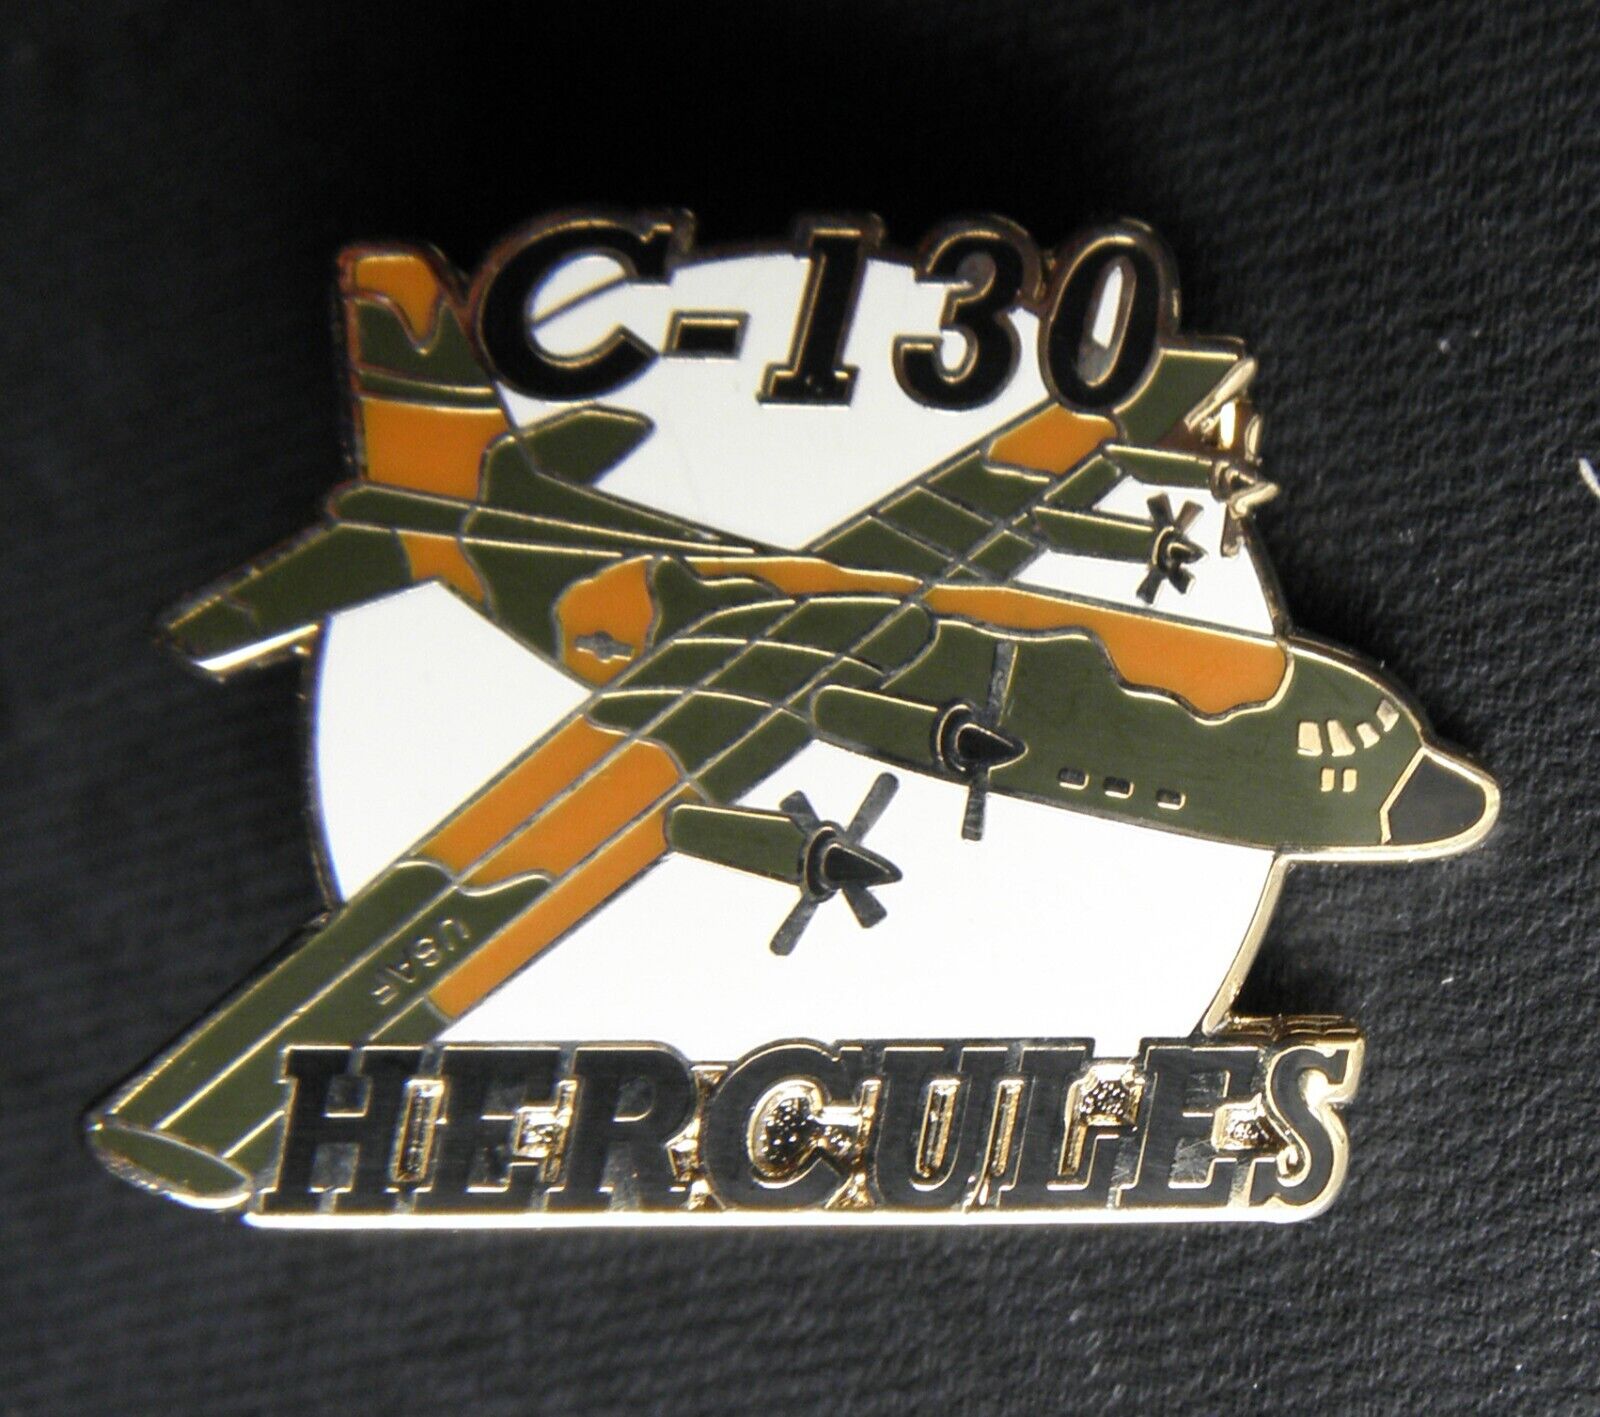 HERCULES C-130 CARGO AIRCRAFT LAPEL PIN BADGE 1.7 INCHES